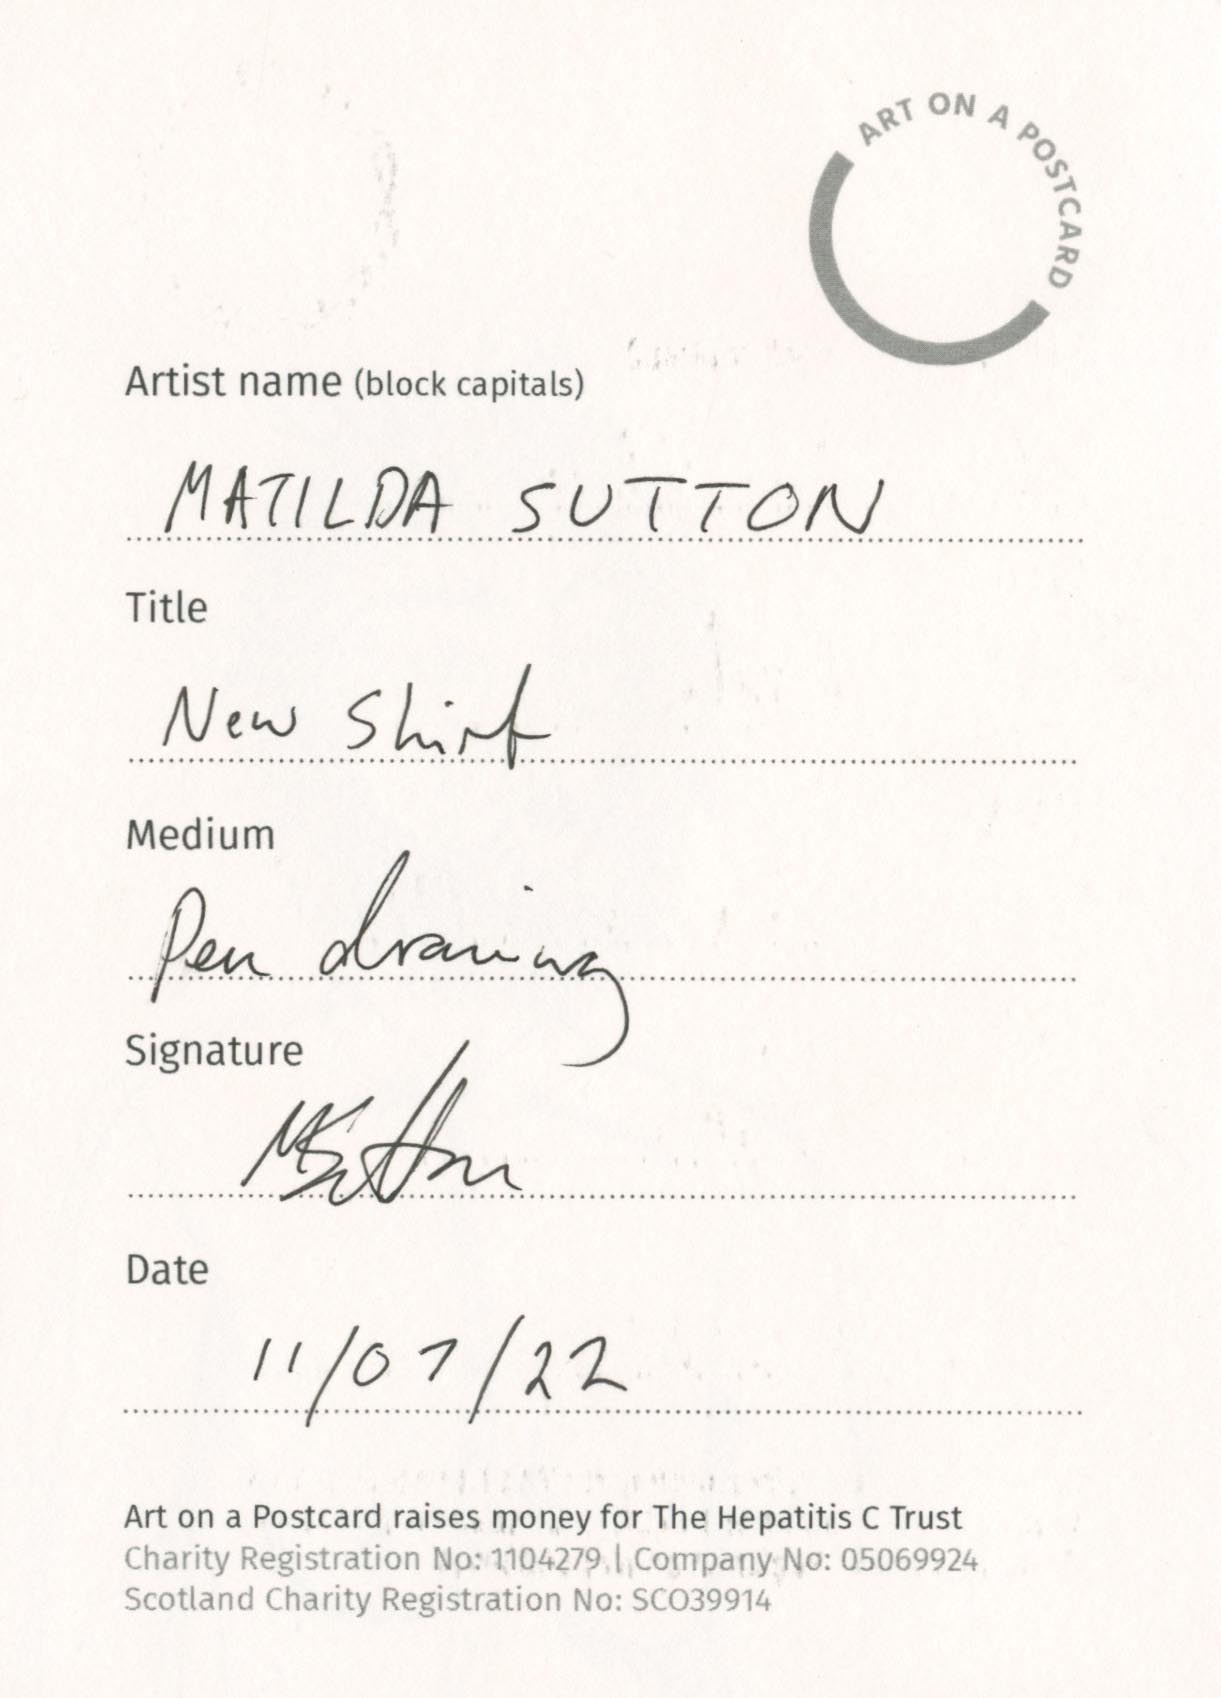 24. Matilda Sutton - New Shirt - BACK